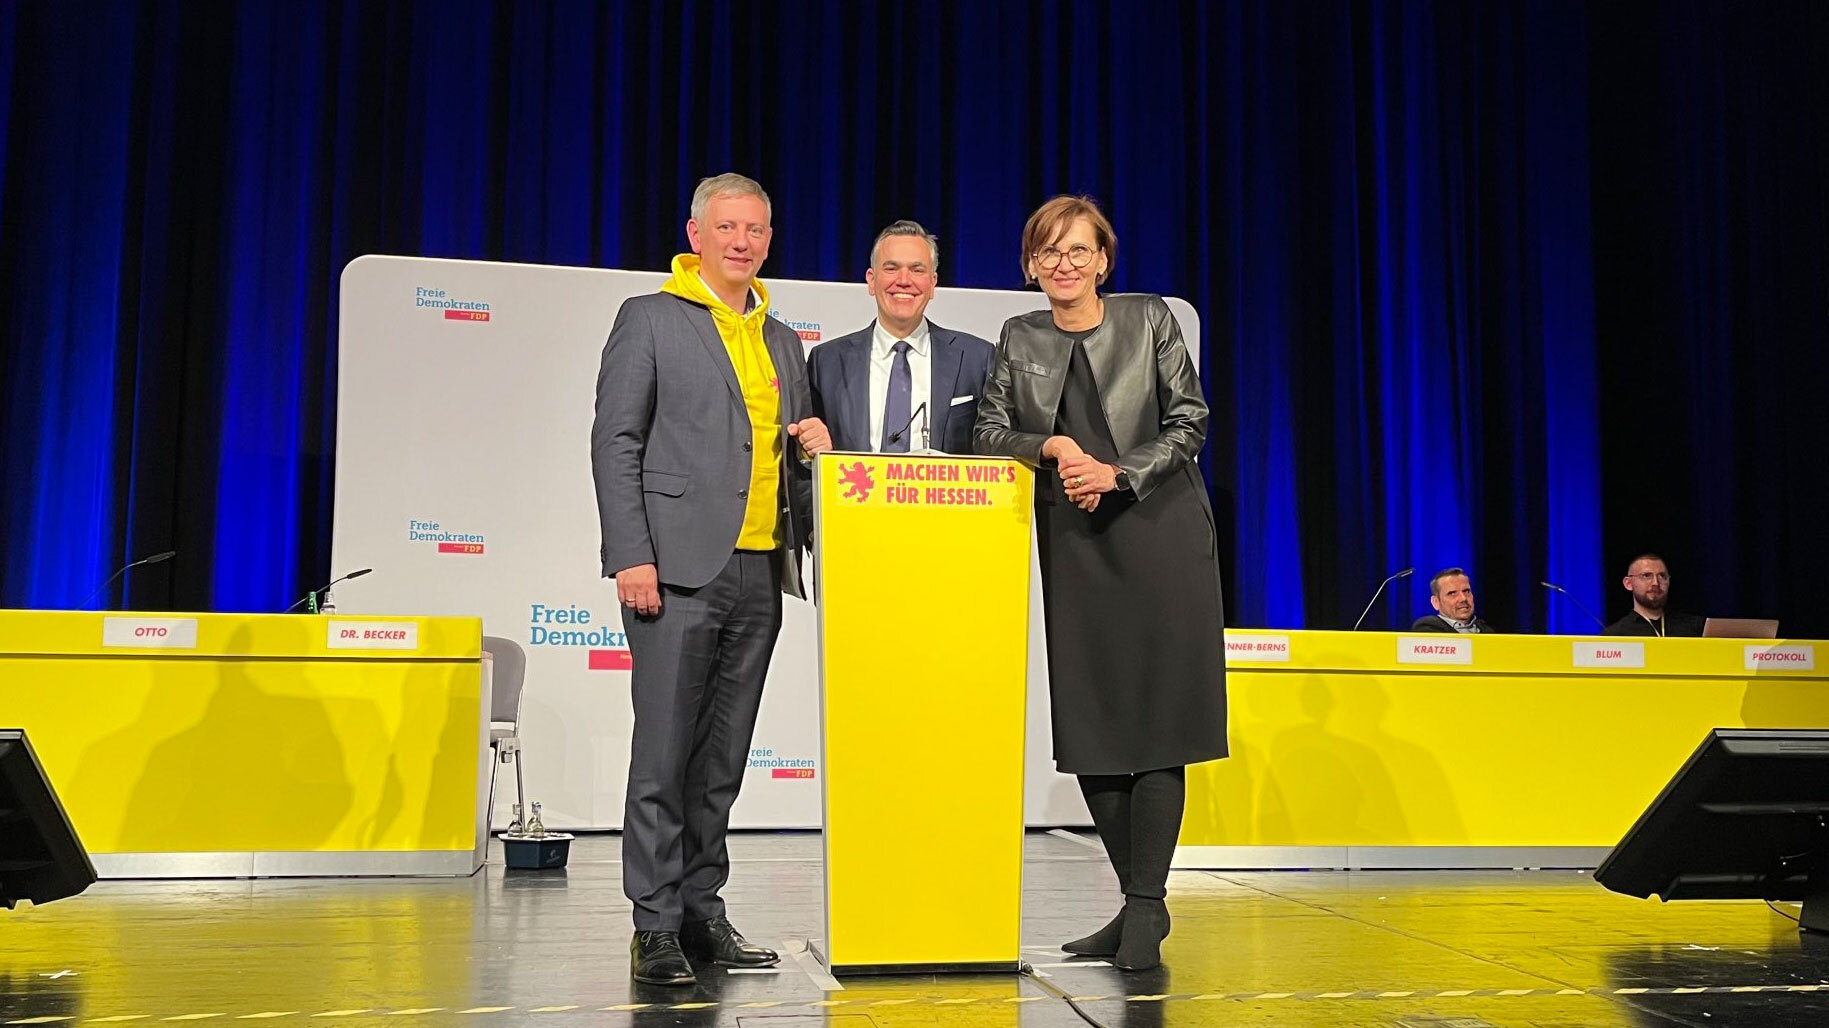 Moritz Promny, Stefan Naas und Bettina Stark-Watzinger auf der Bühne des Landesparteitags der FDP Hessen